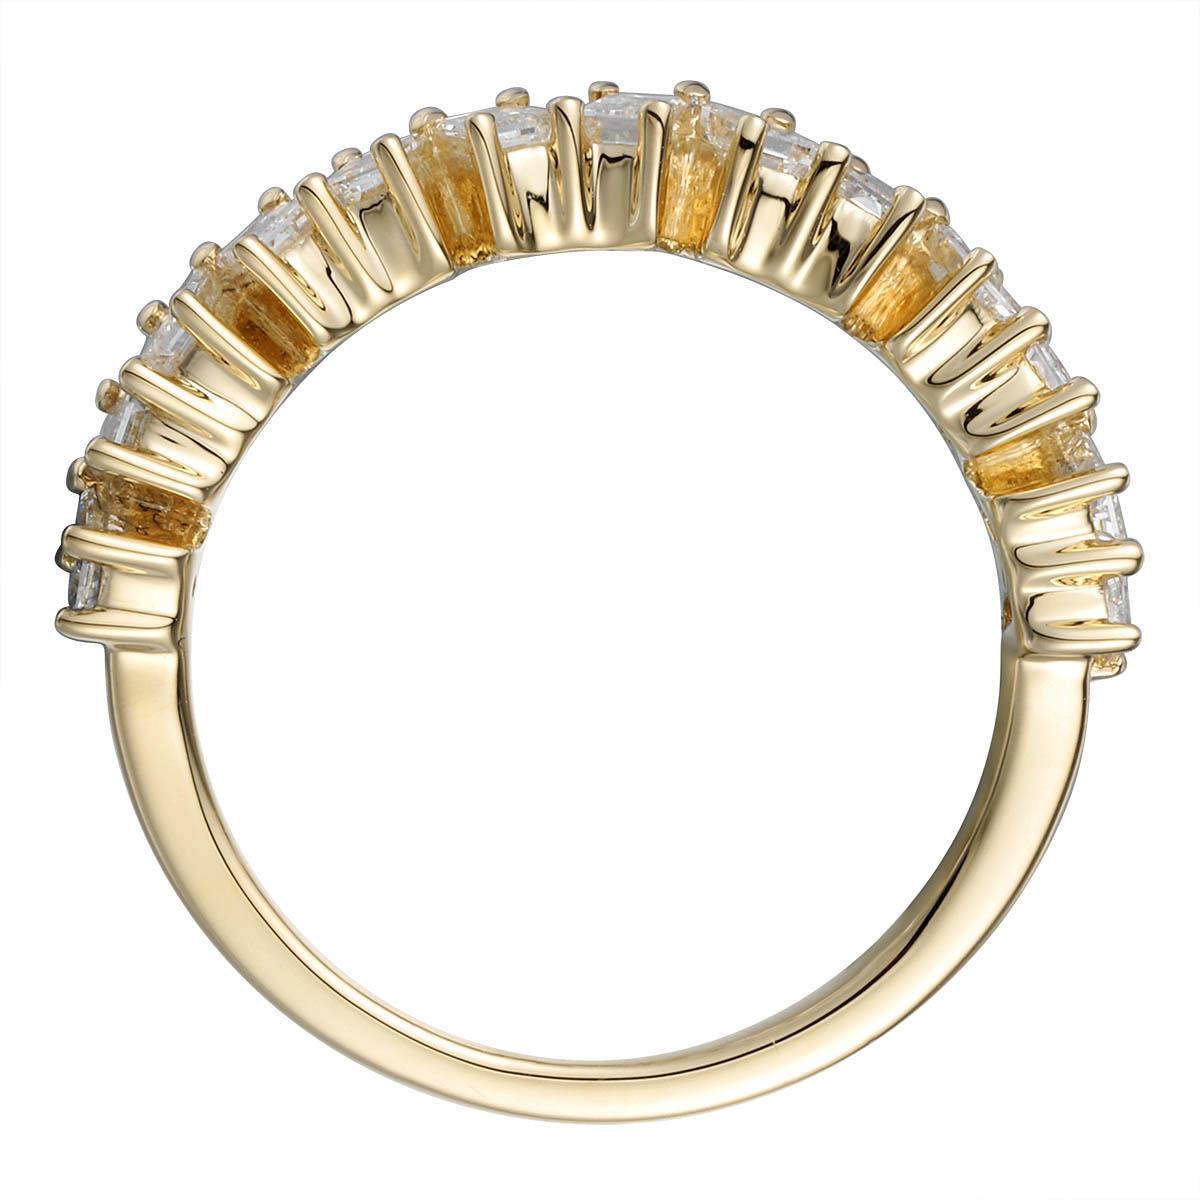 White Gold & Baguette Off Center Diamond Ring